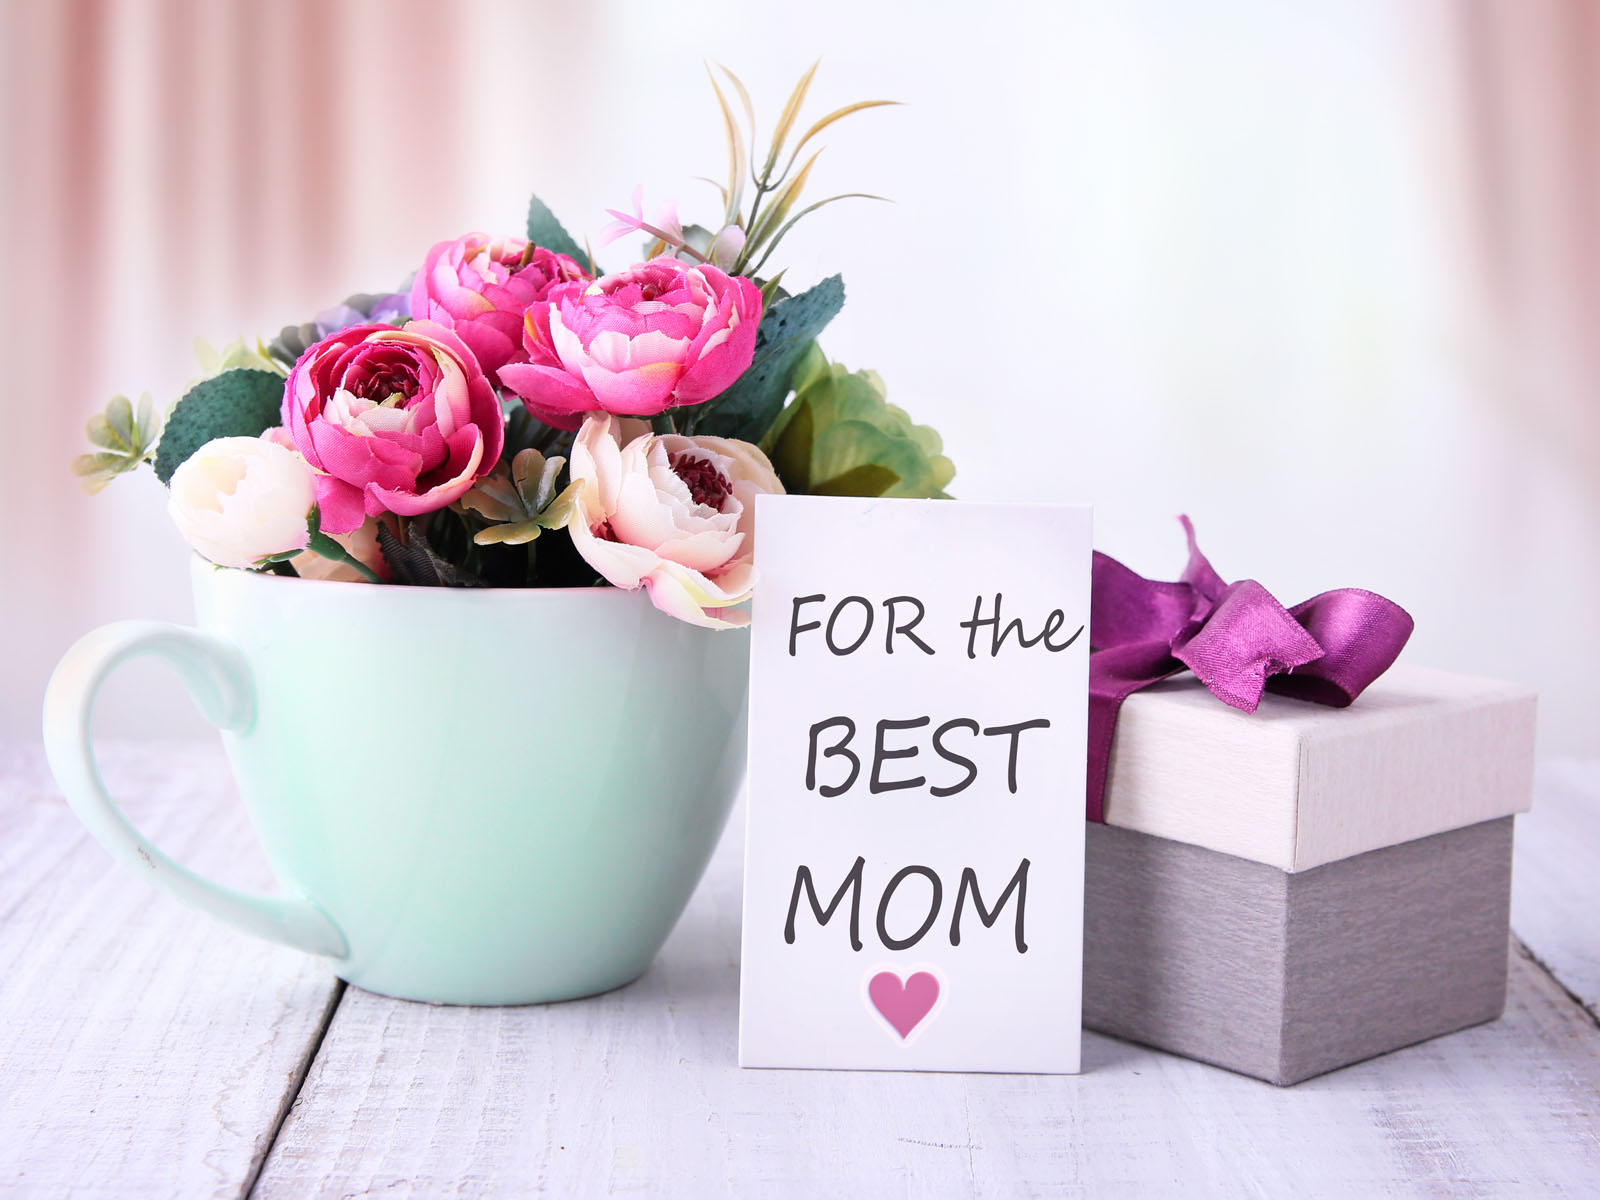 Festa della mamma 2022: 15 idee per il regalo perfetto